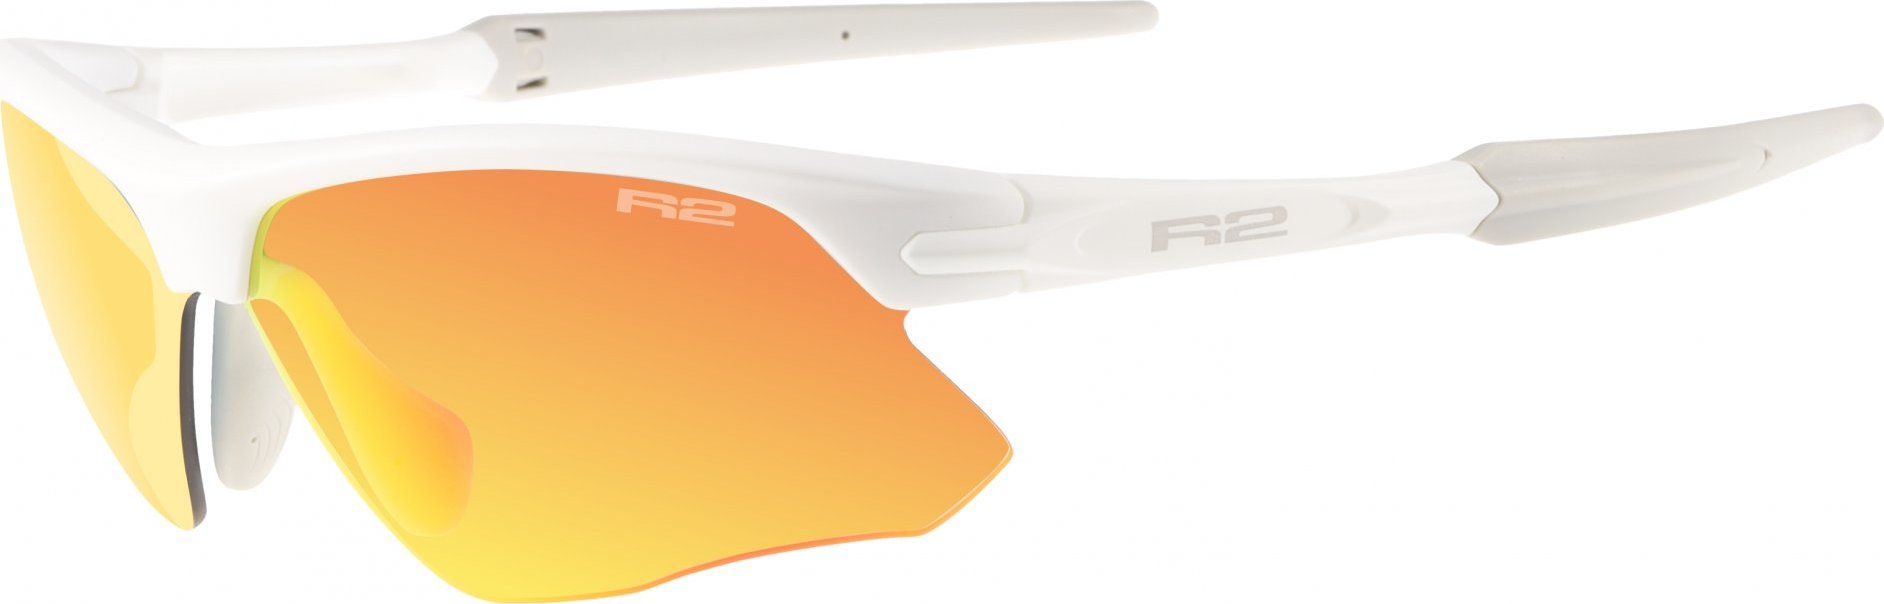 Sportovní sluneční brýle R2 Kick bílé